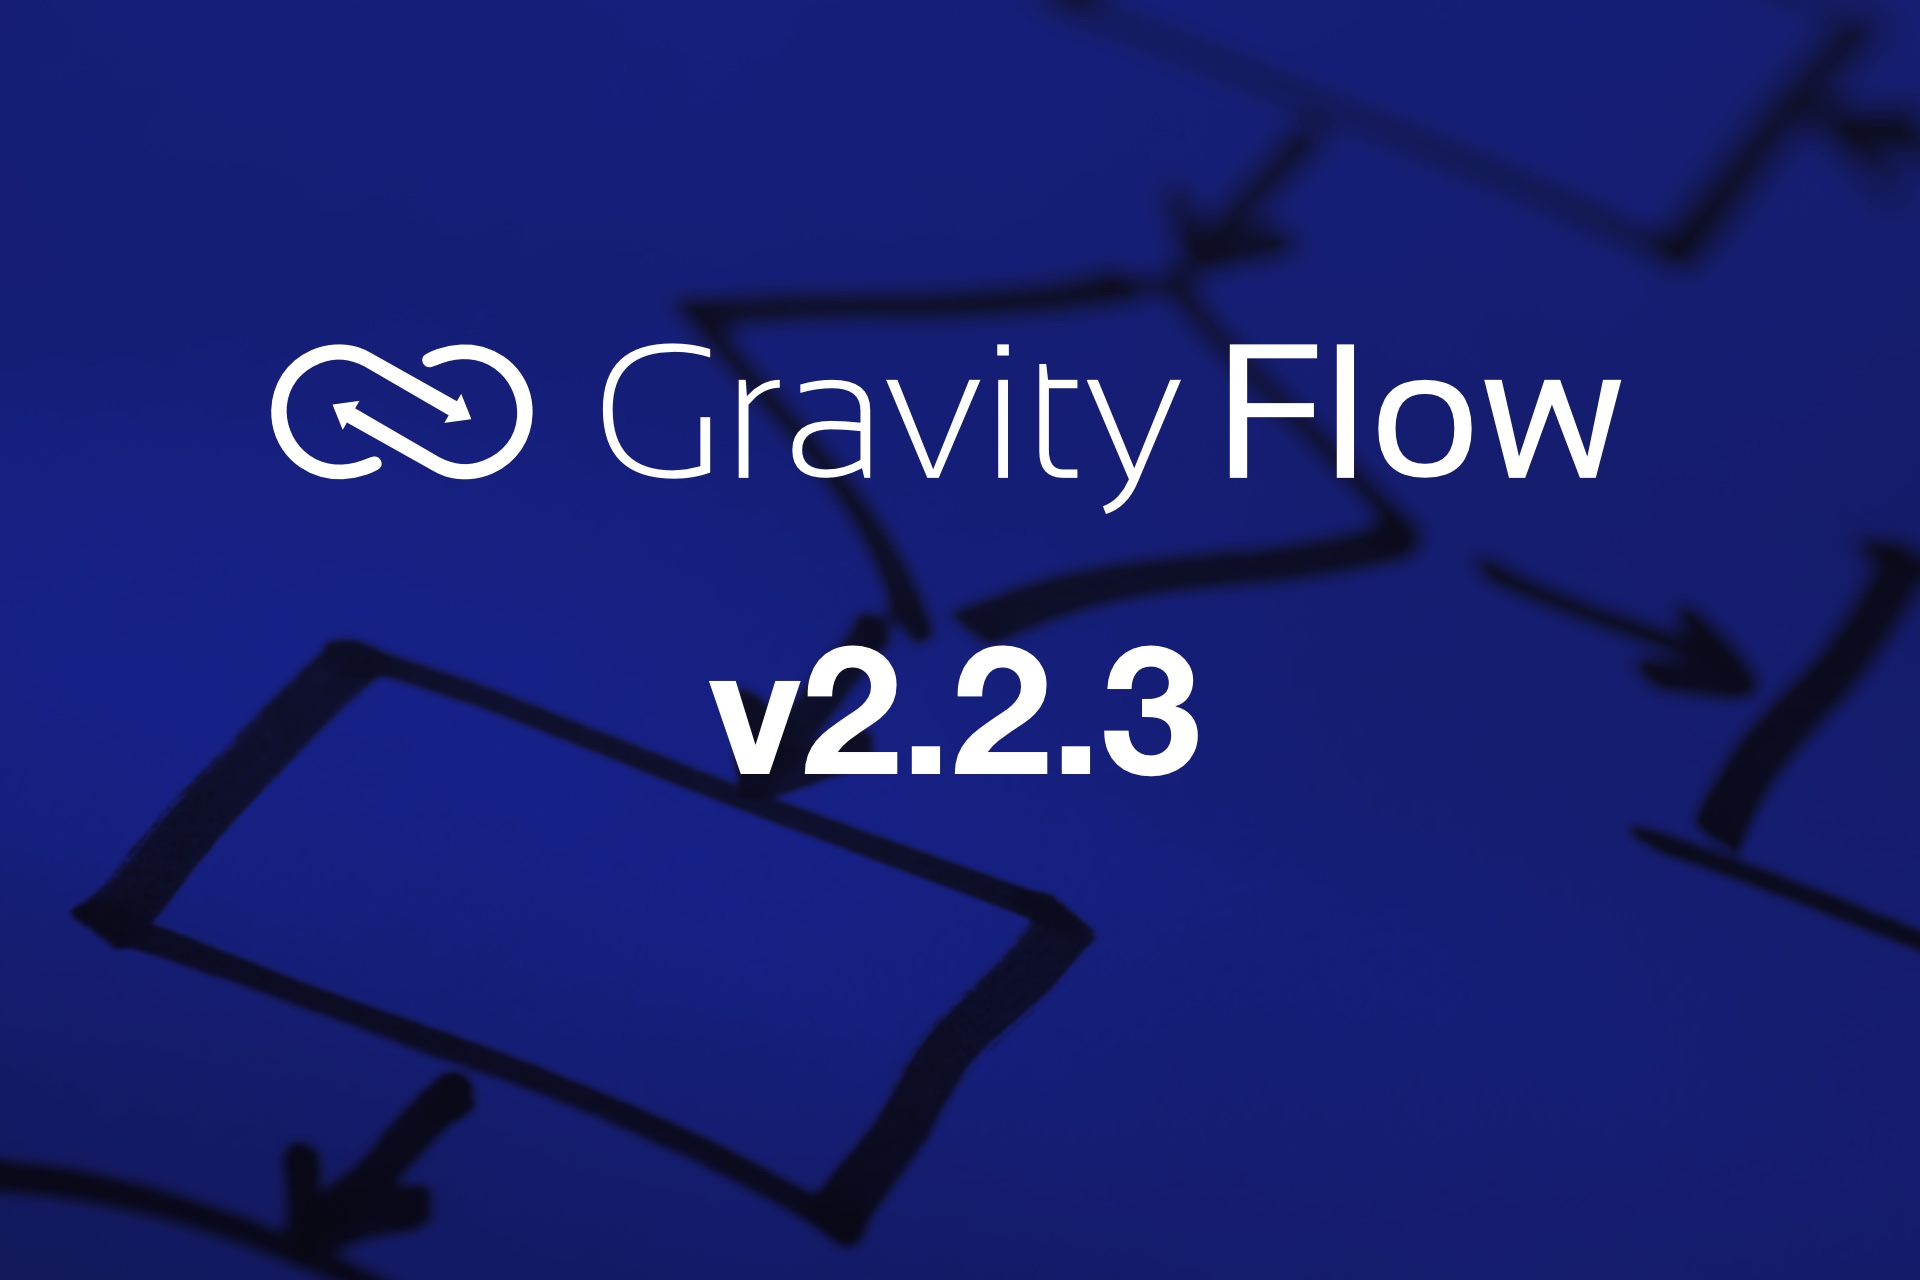 Gravity Flow v2.2.3 Released